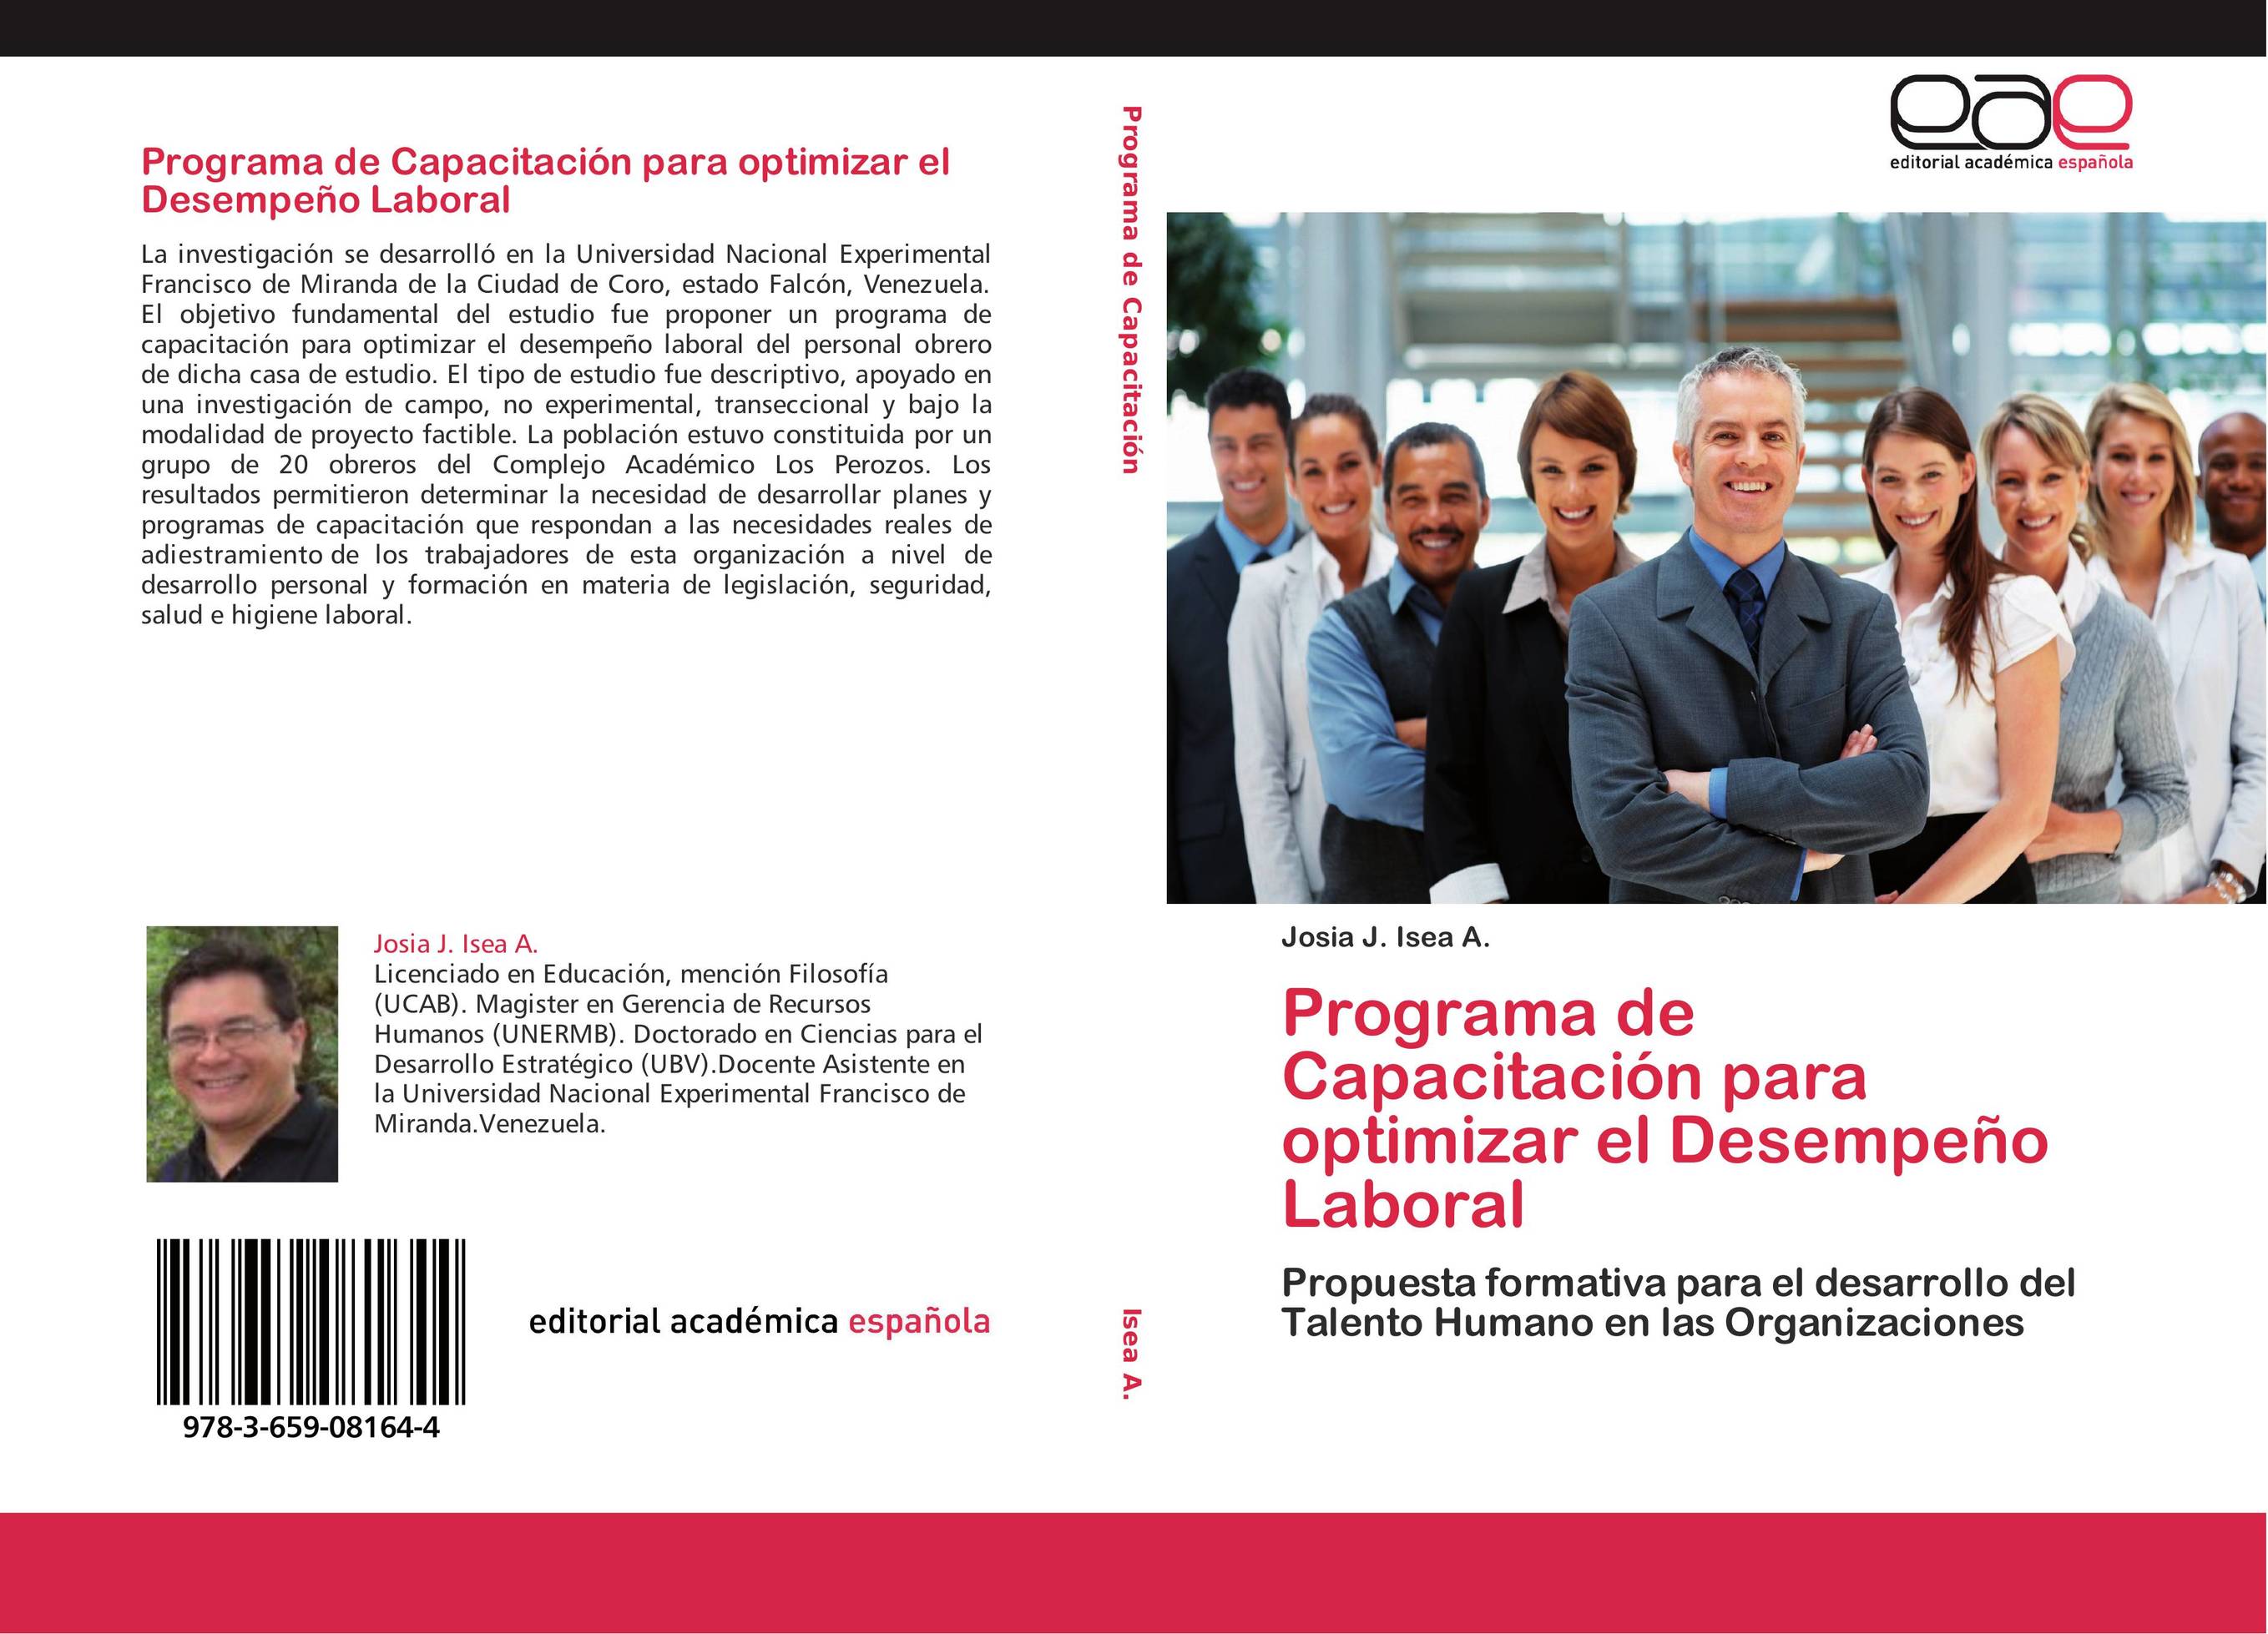 Programa de Capacitación para optimizar el Desempeño Laboral